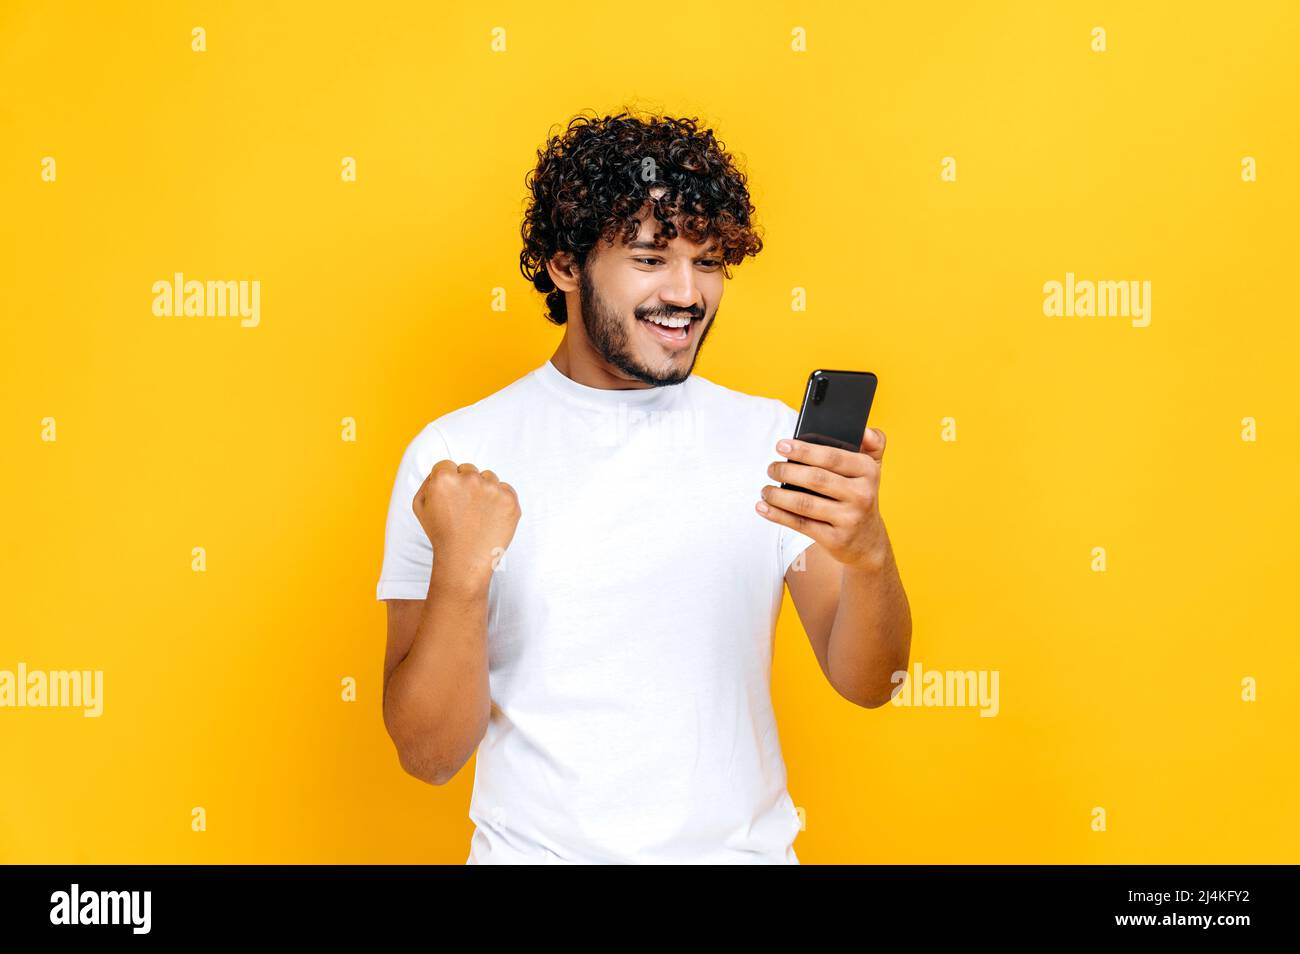 Glücklich fröhlich aufgeregt indischen oder arabischen Kerl hält Smartphone, erhalten unerwartete Nachrichten, gewinnen Lotterie, steht auf isolierten orangefarbenen Hintergrund, fröhlichen Gesichtsausdruck, toothy Lächeln, gestikulieren mit Faust Stockfoto